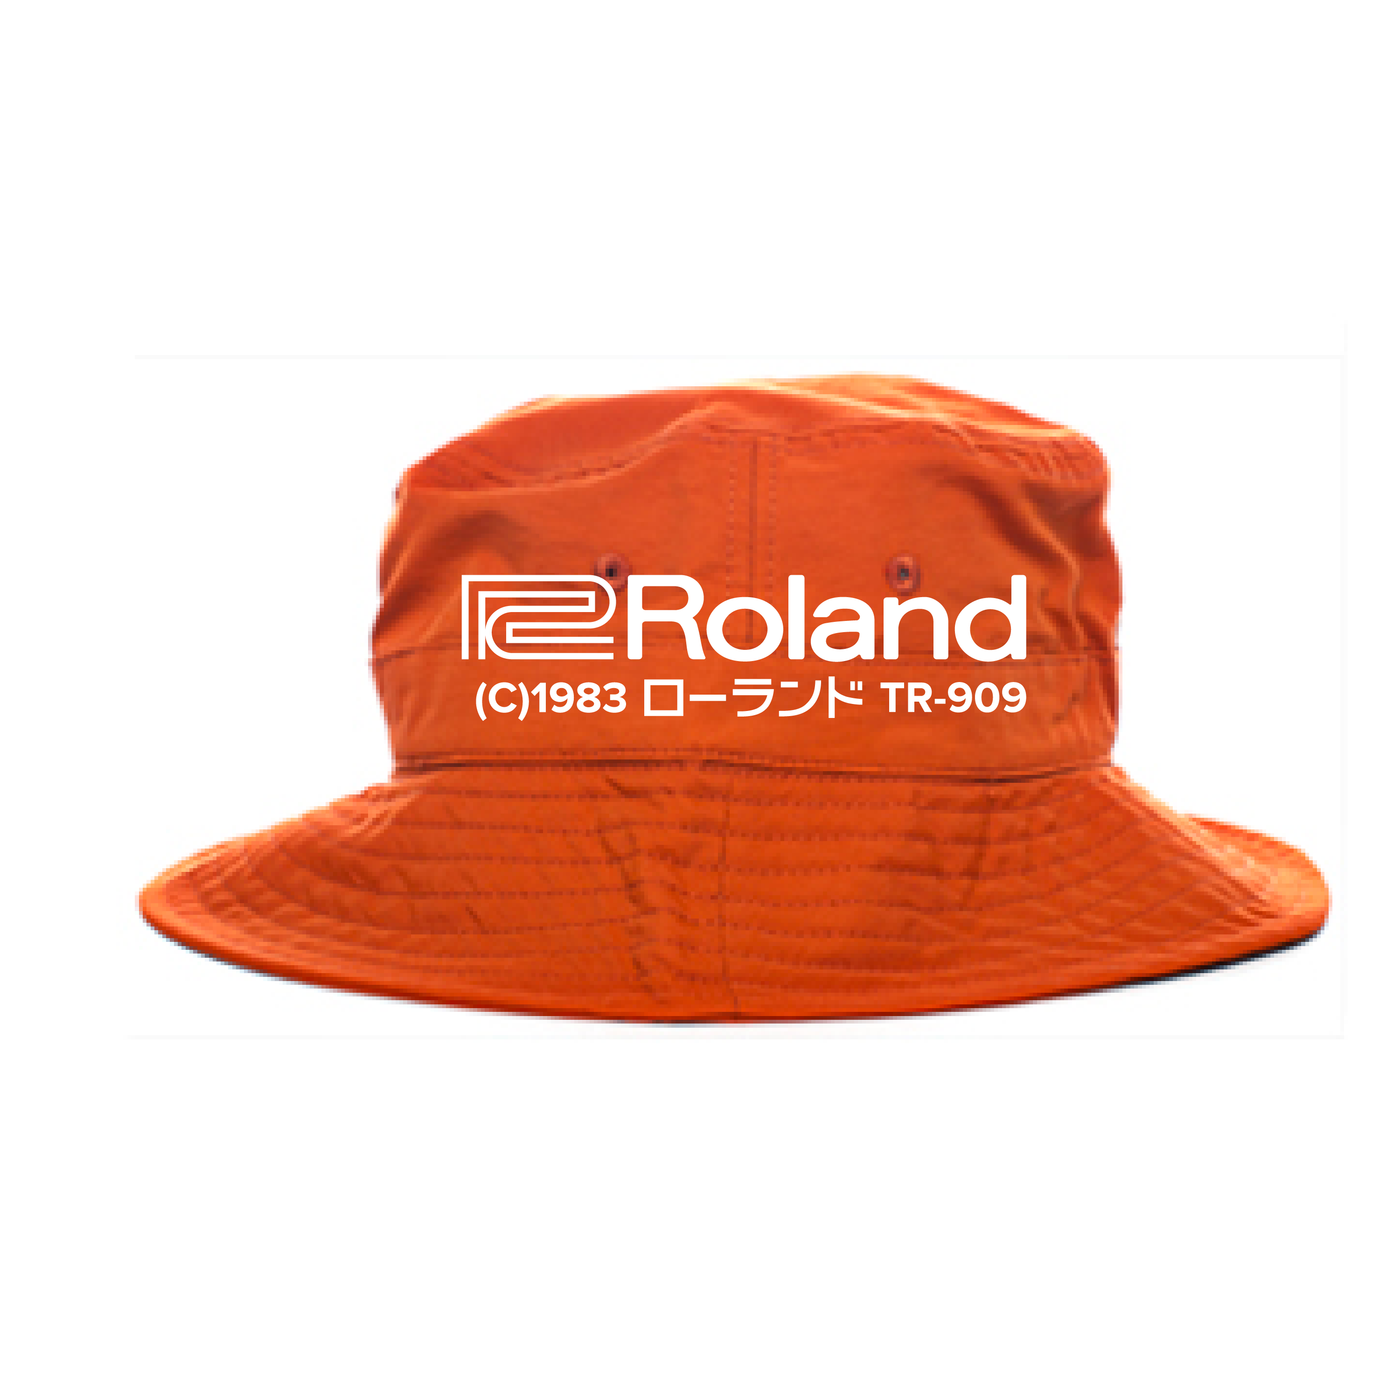 Roland 1983 Bucket Hat